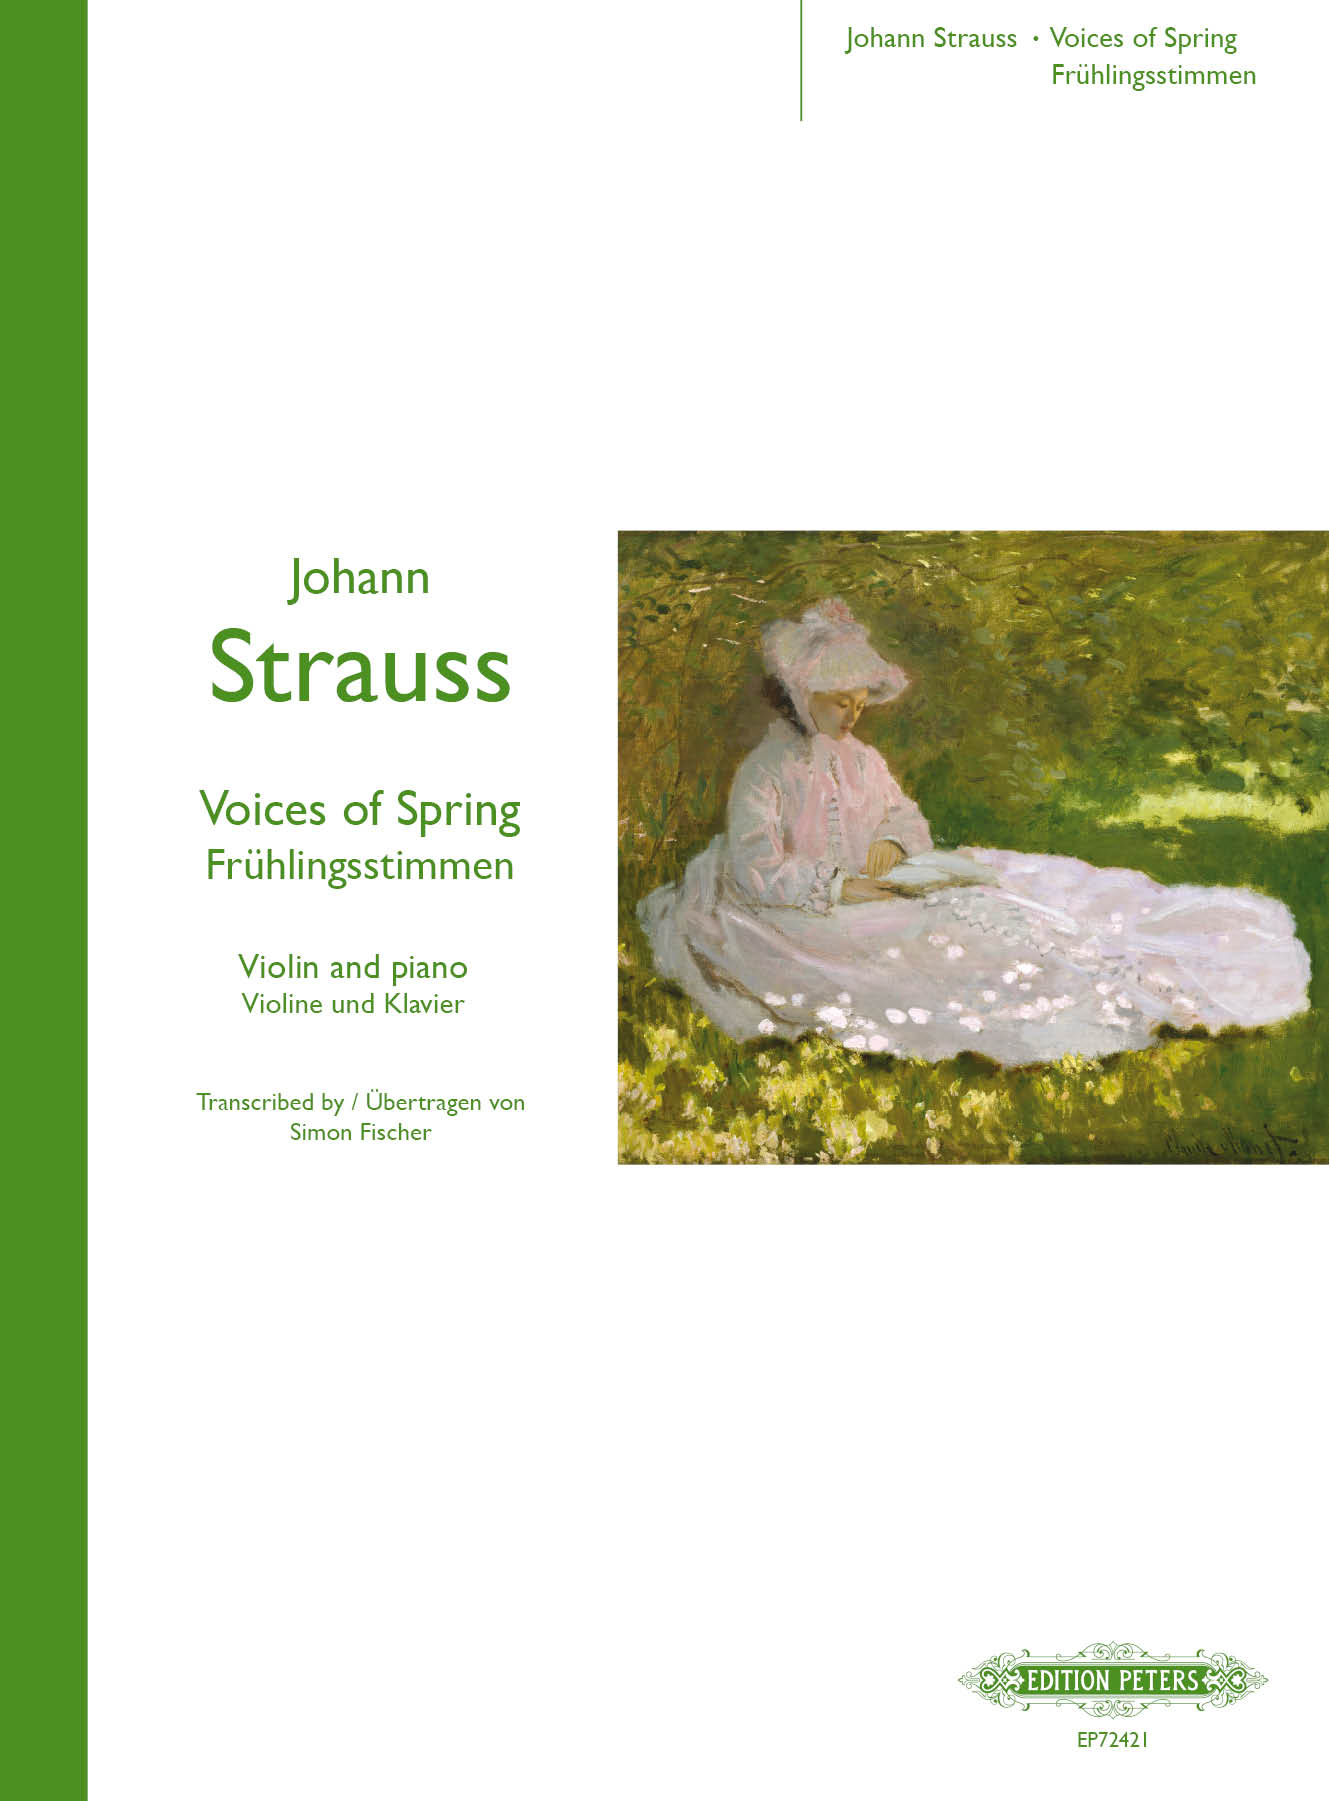 STRAUSS: Voices of Spring, arr. Fischer